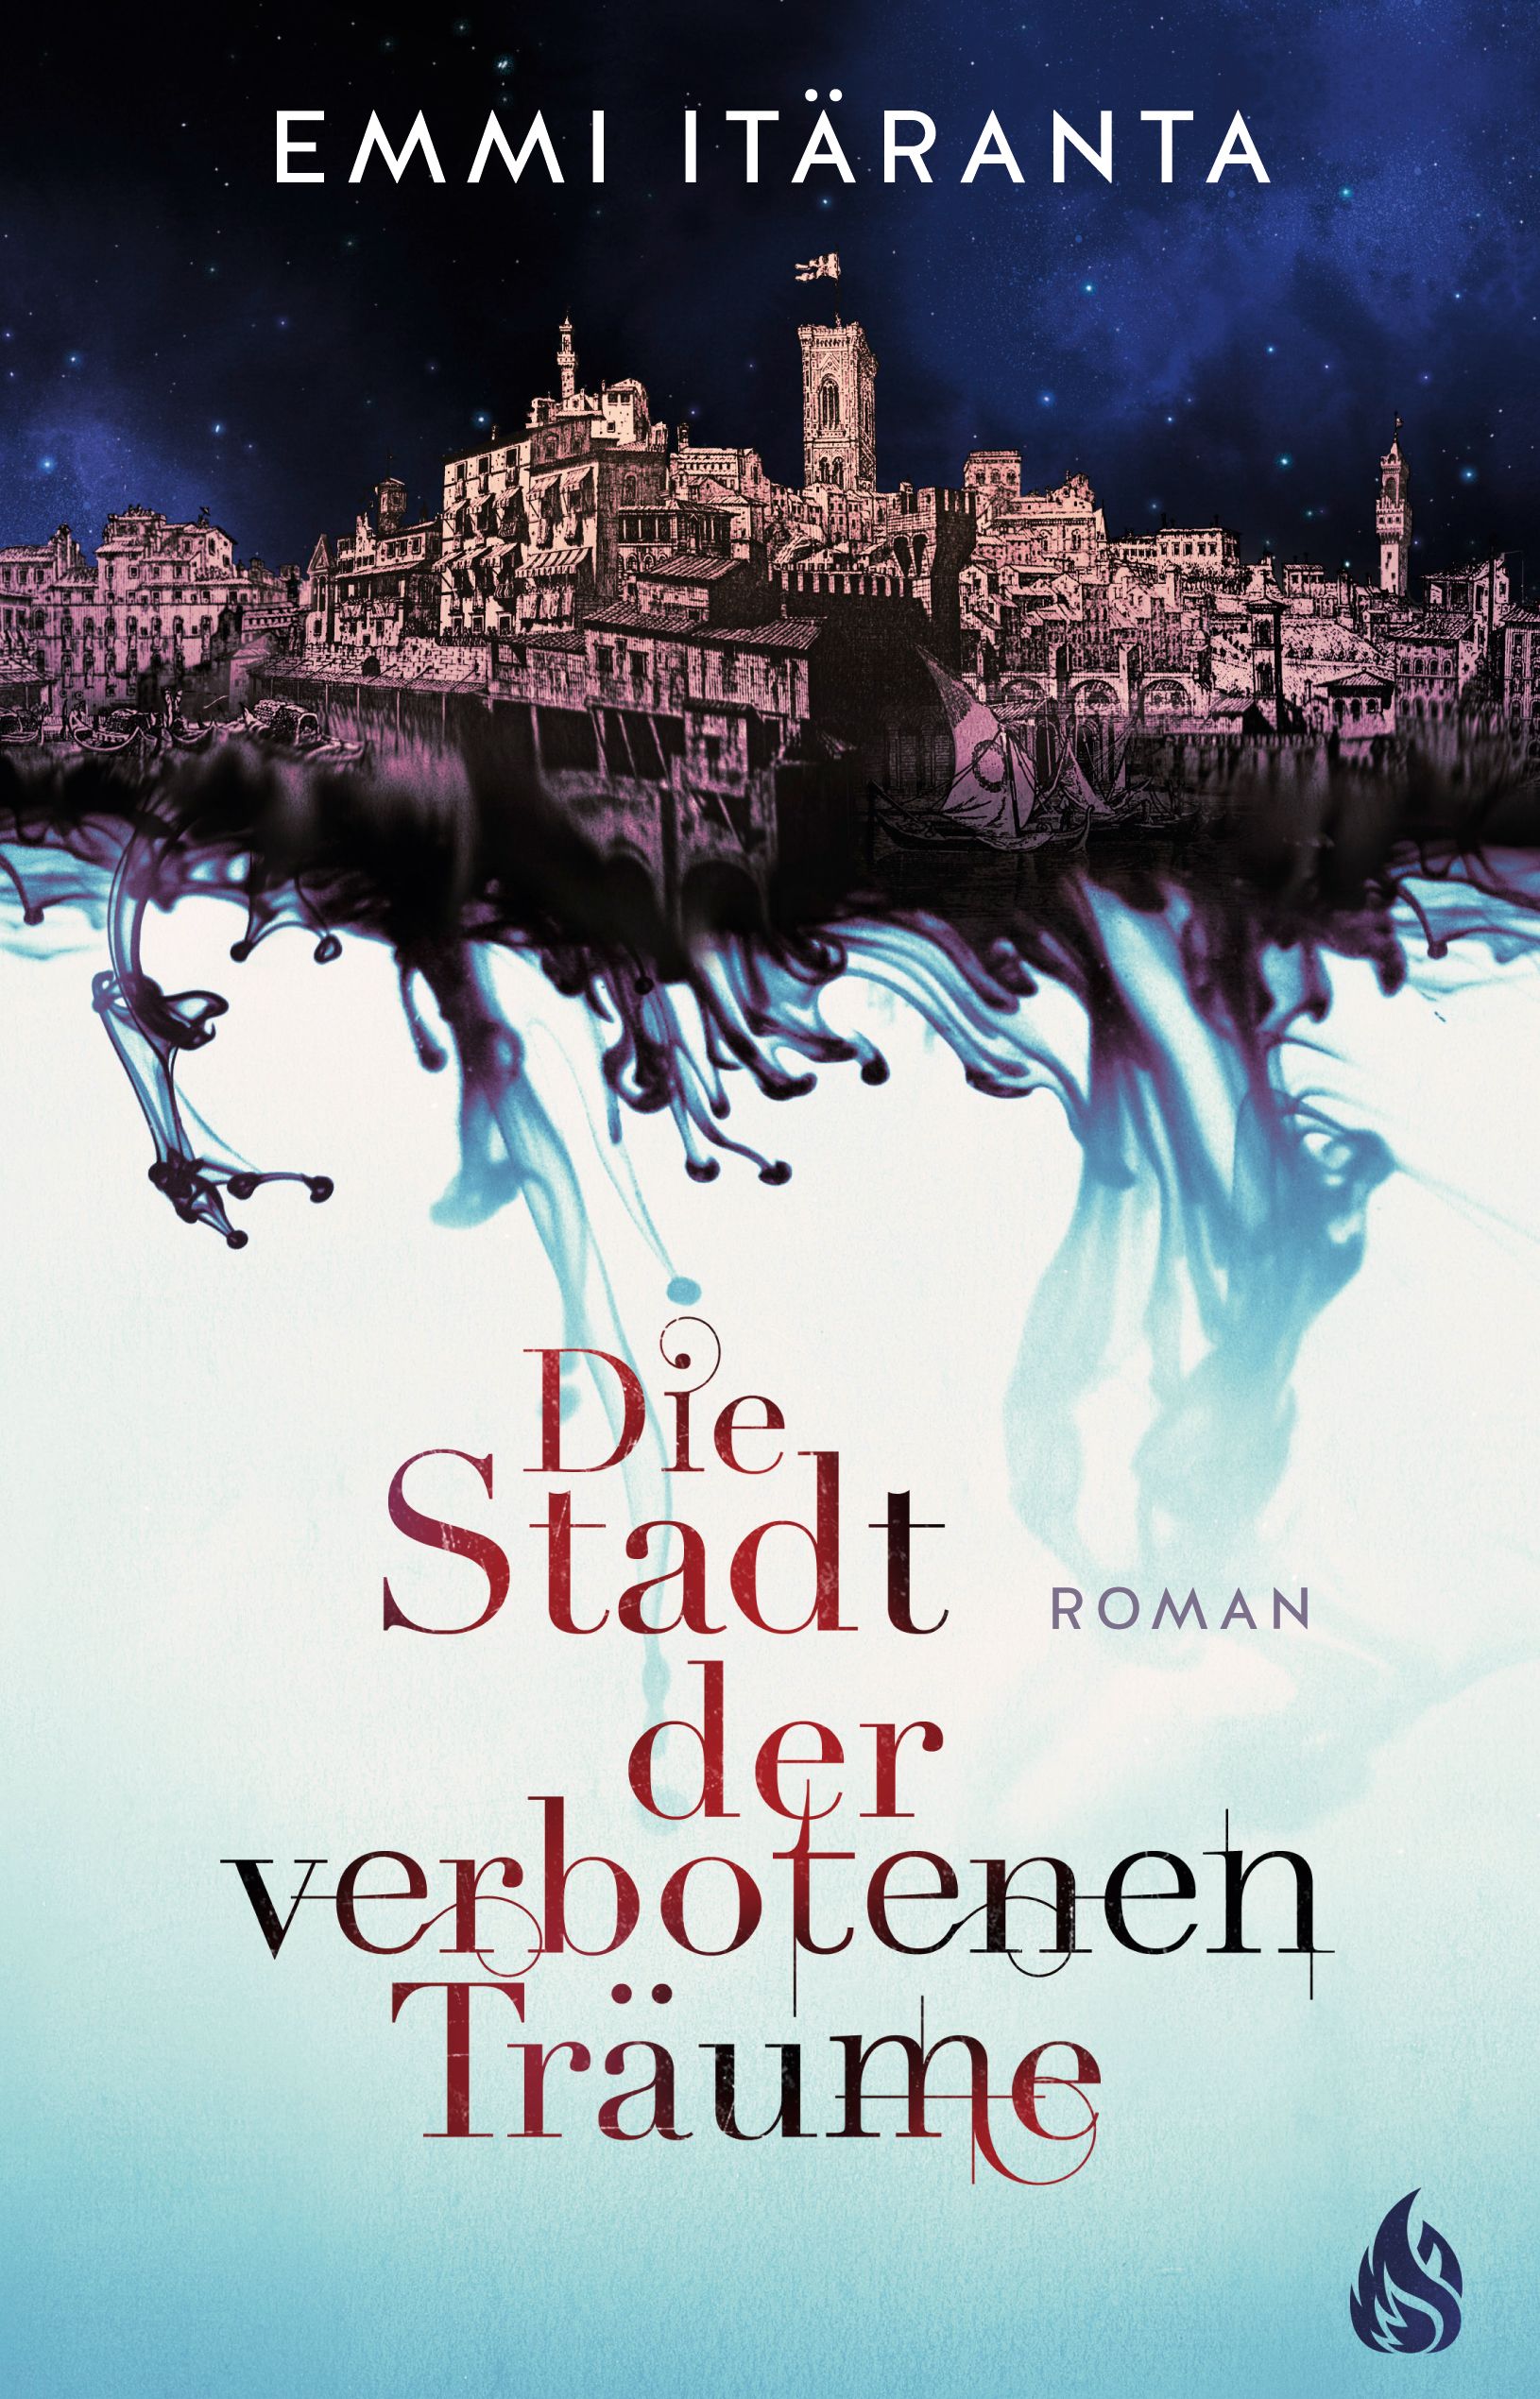 Die Stadt der verbotenen Träume book cover